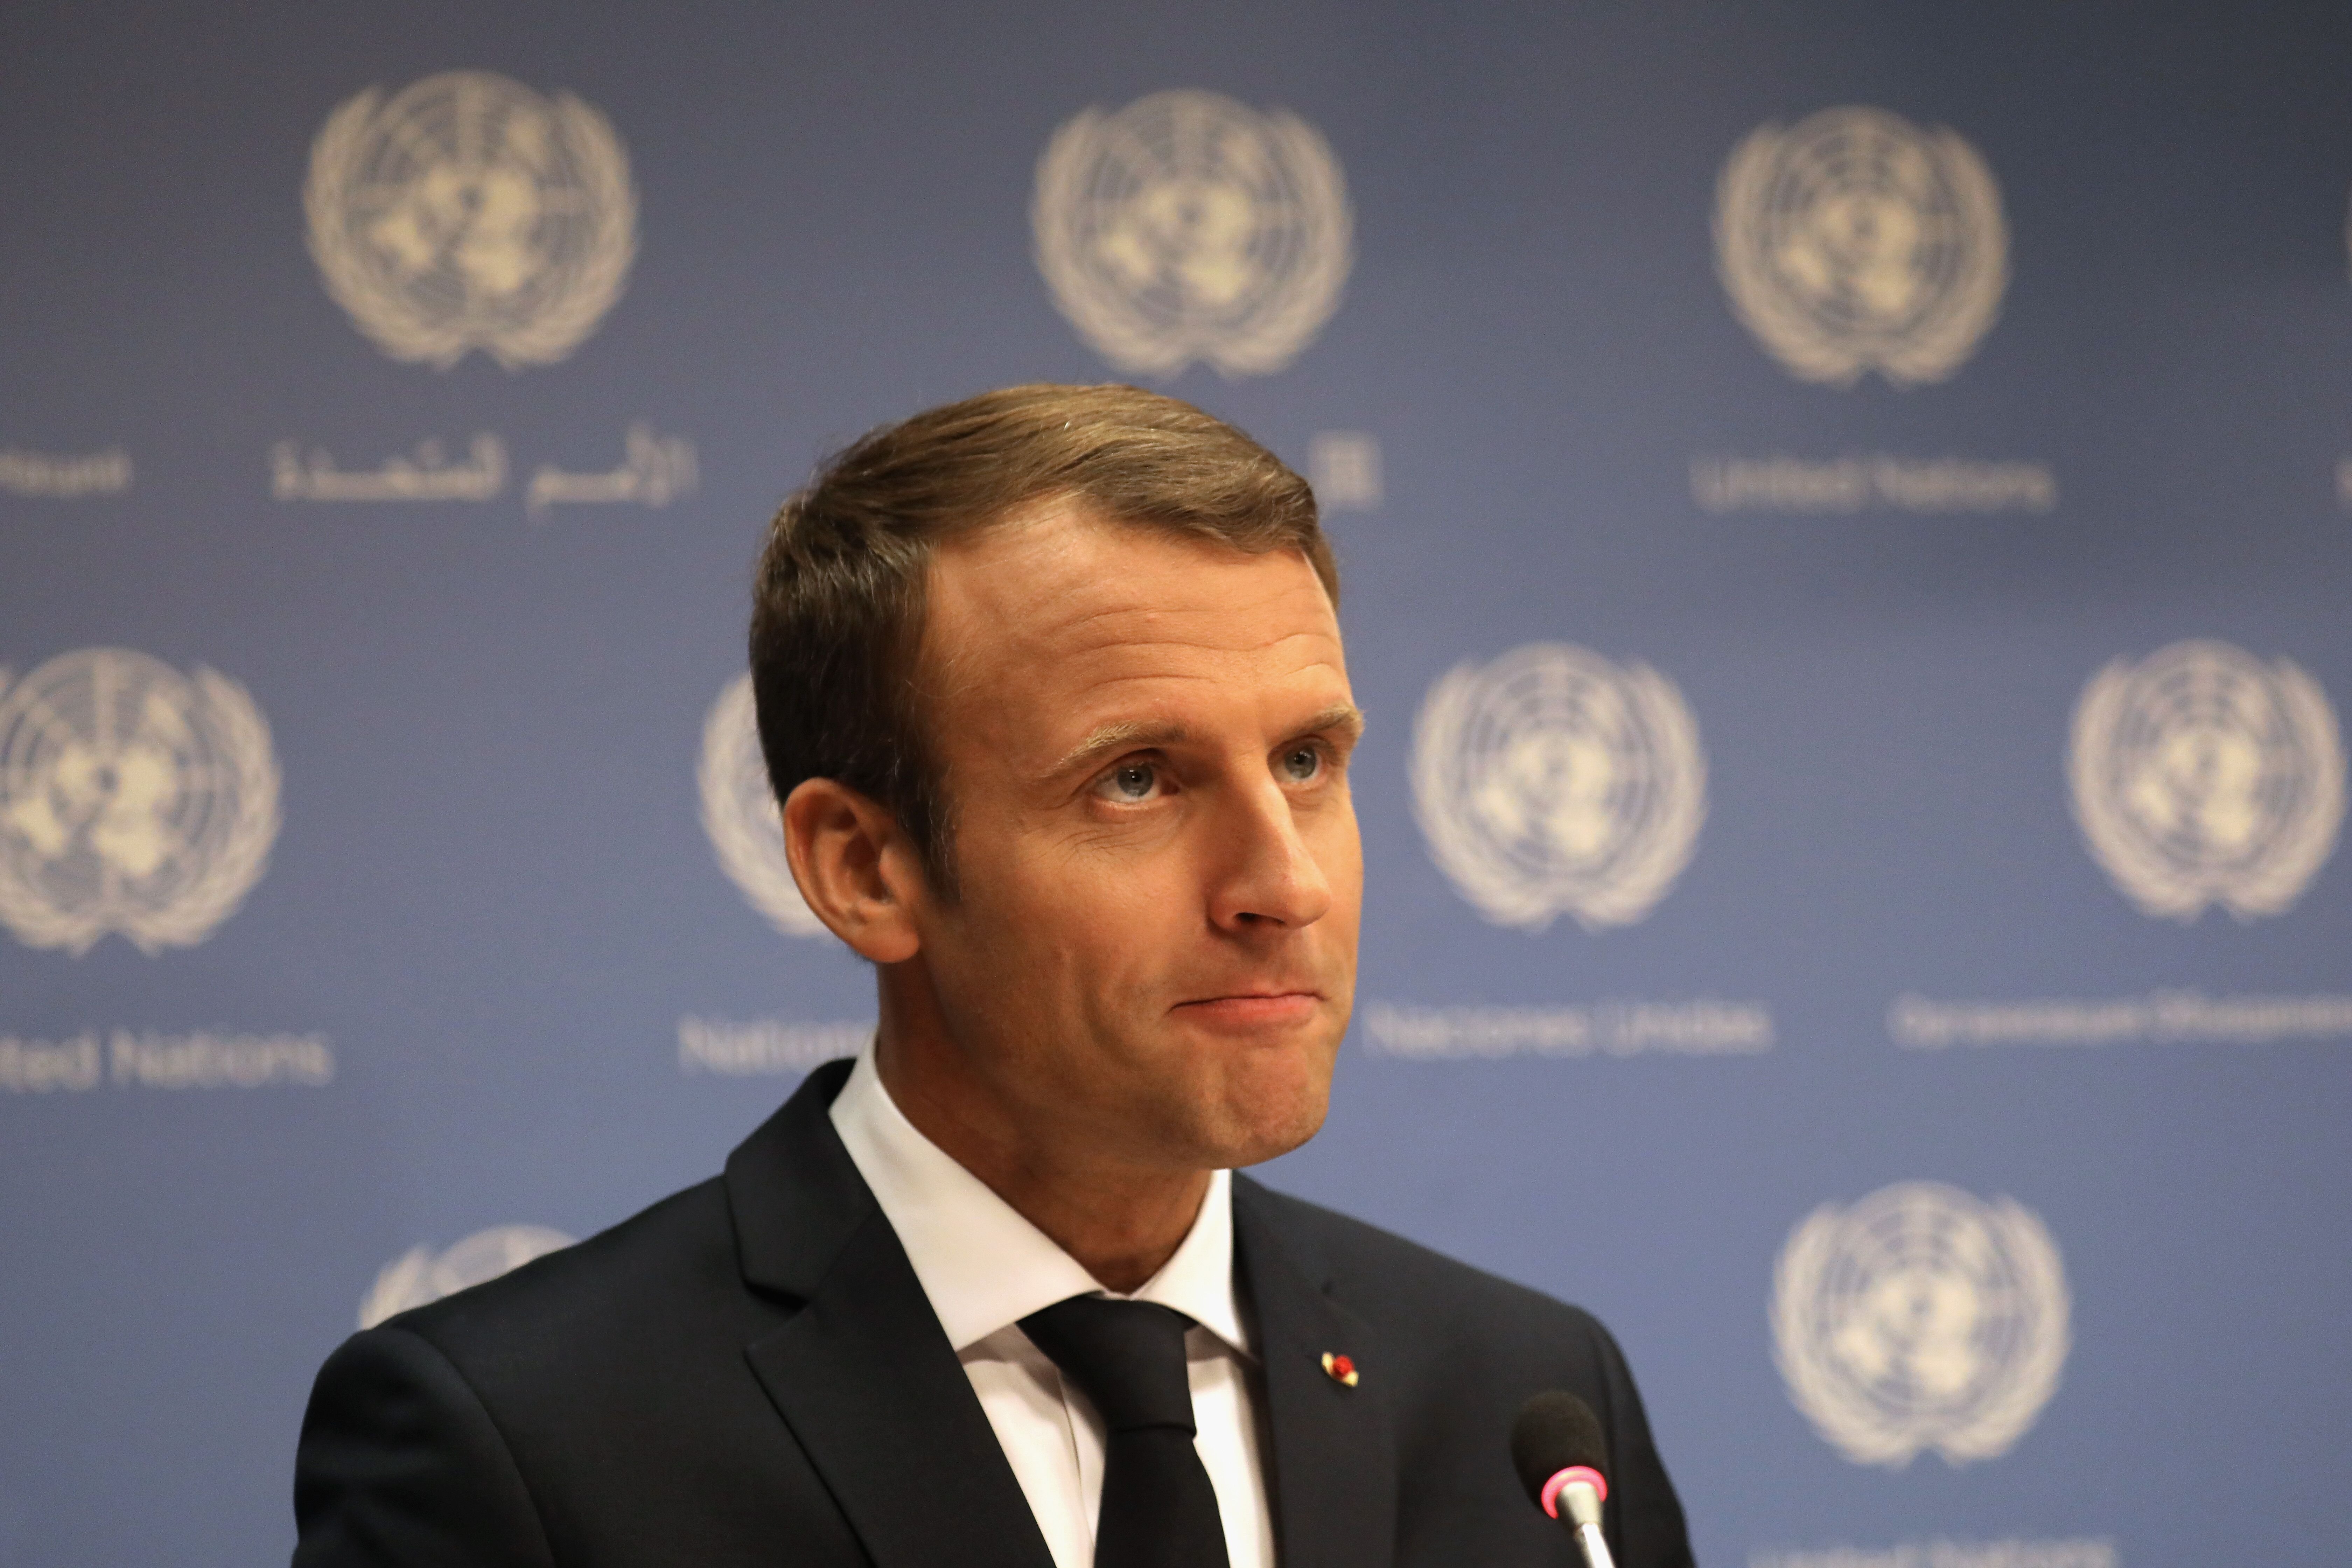 Le Président français Emmanuel Macron tient une conférence de presse aux Nations Unies le 19 septembre 2017 à New York. | Photo : Getty Images